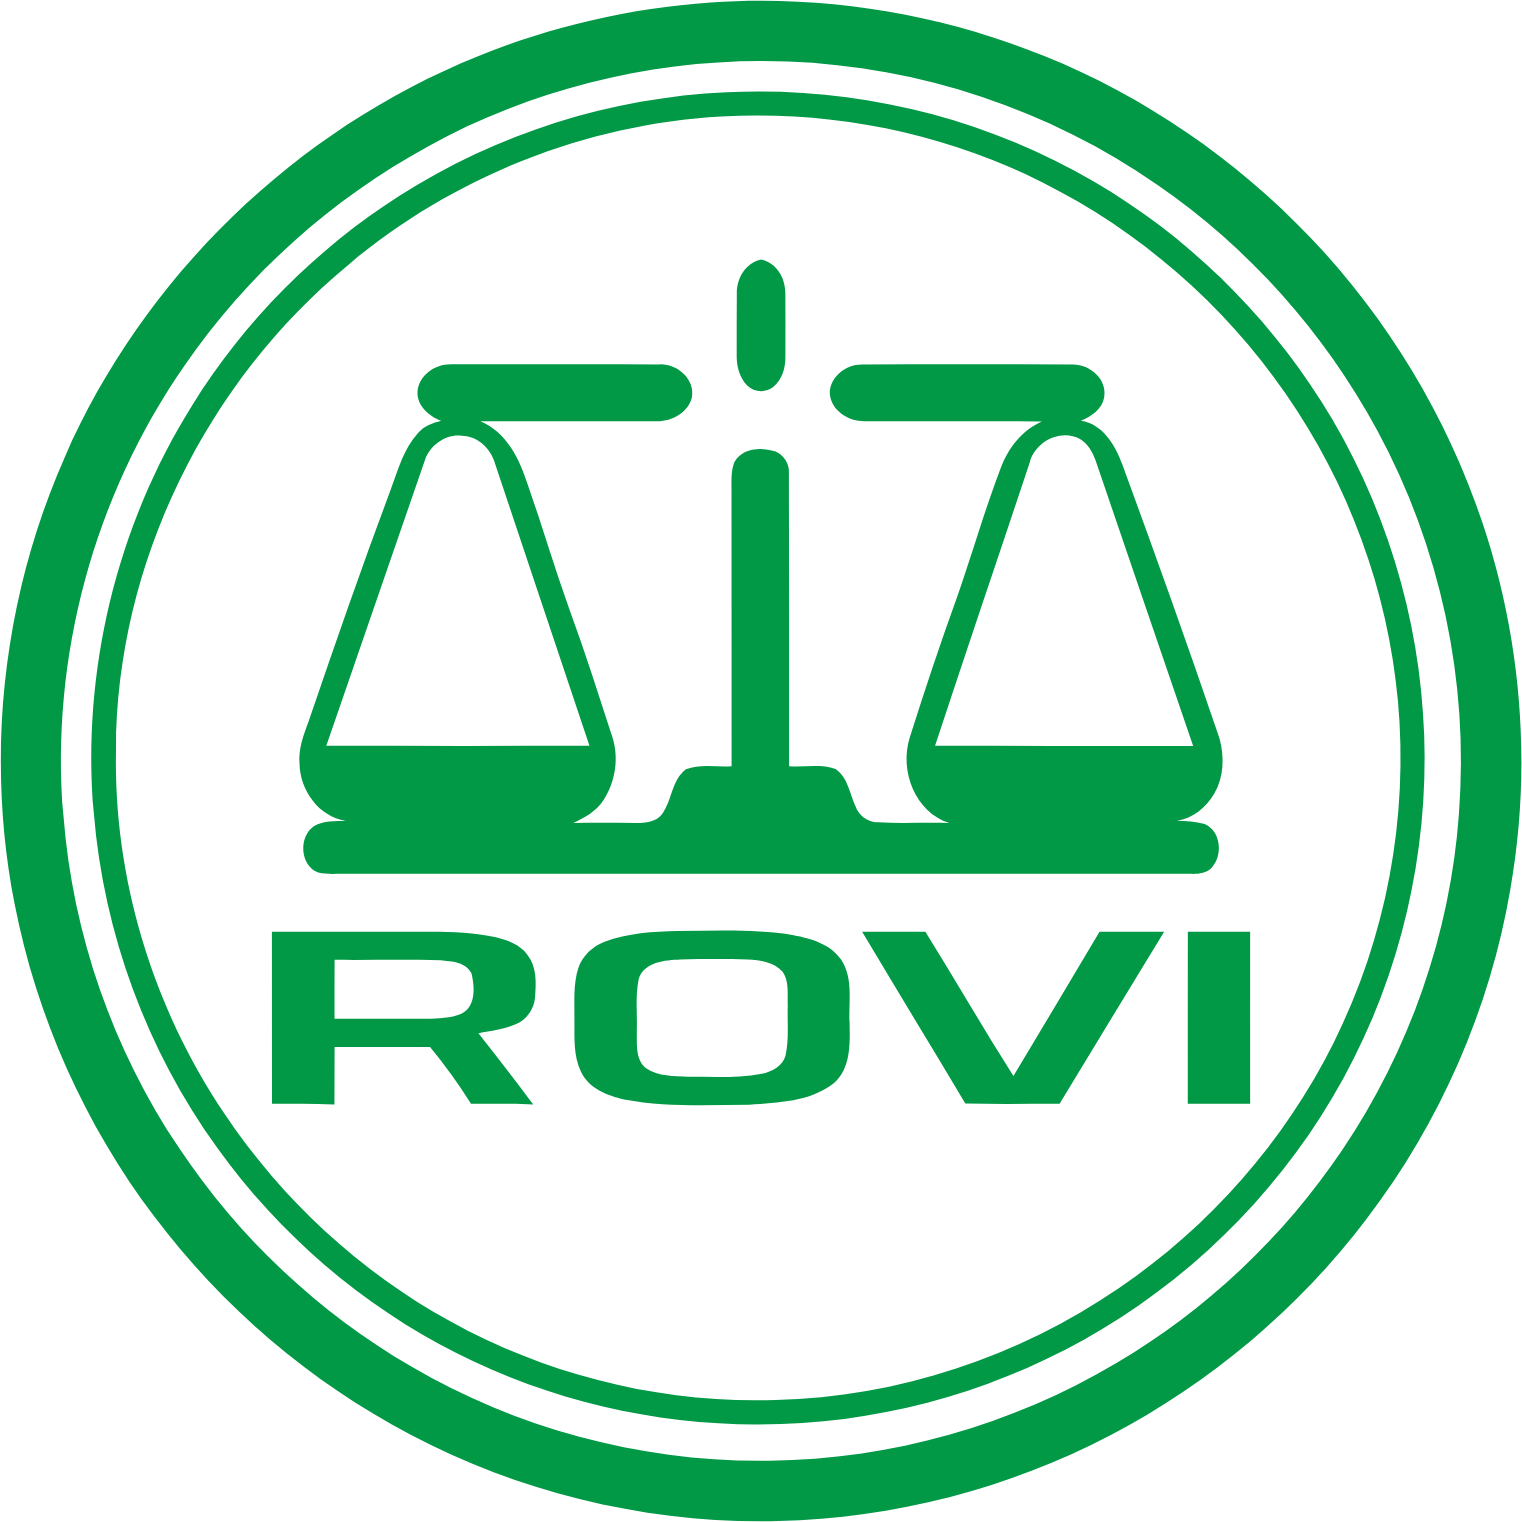 Laboratorios Farmaceuticos Rovi logo (PNG transparent)